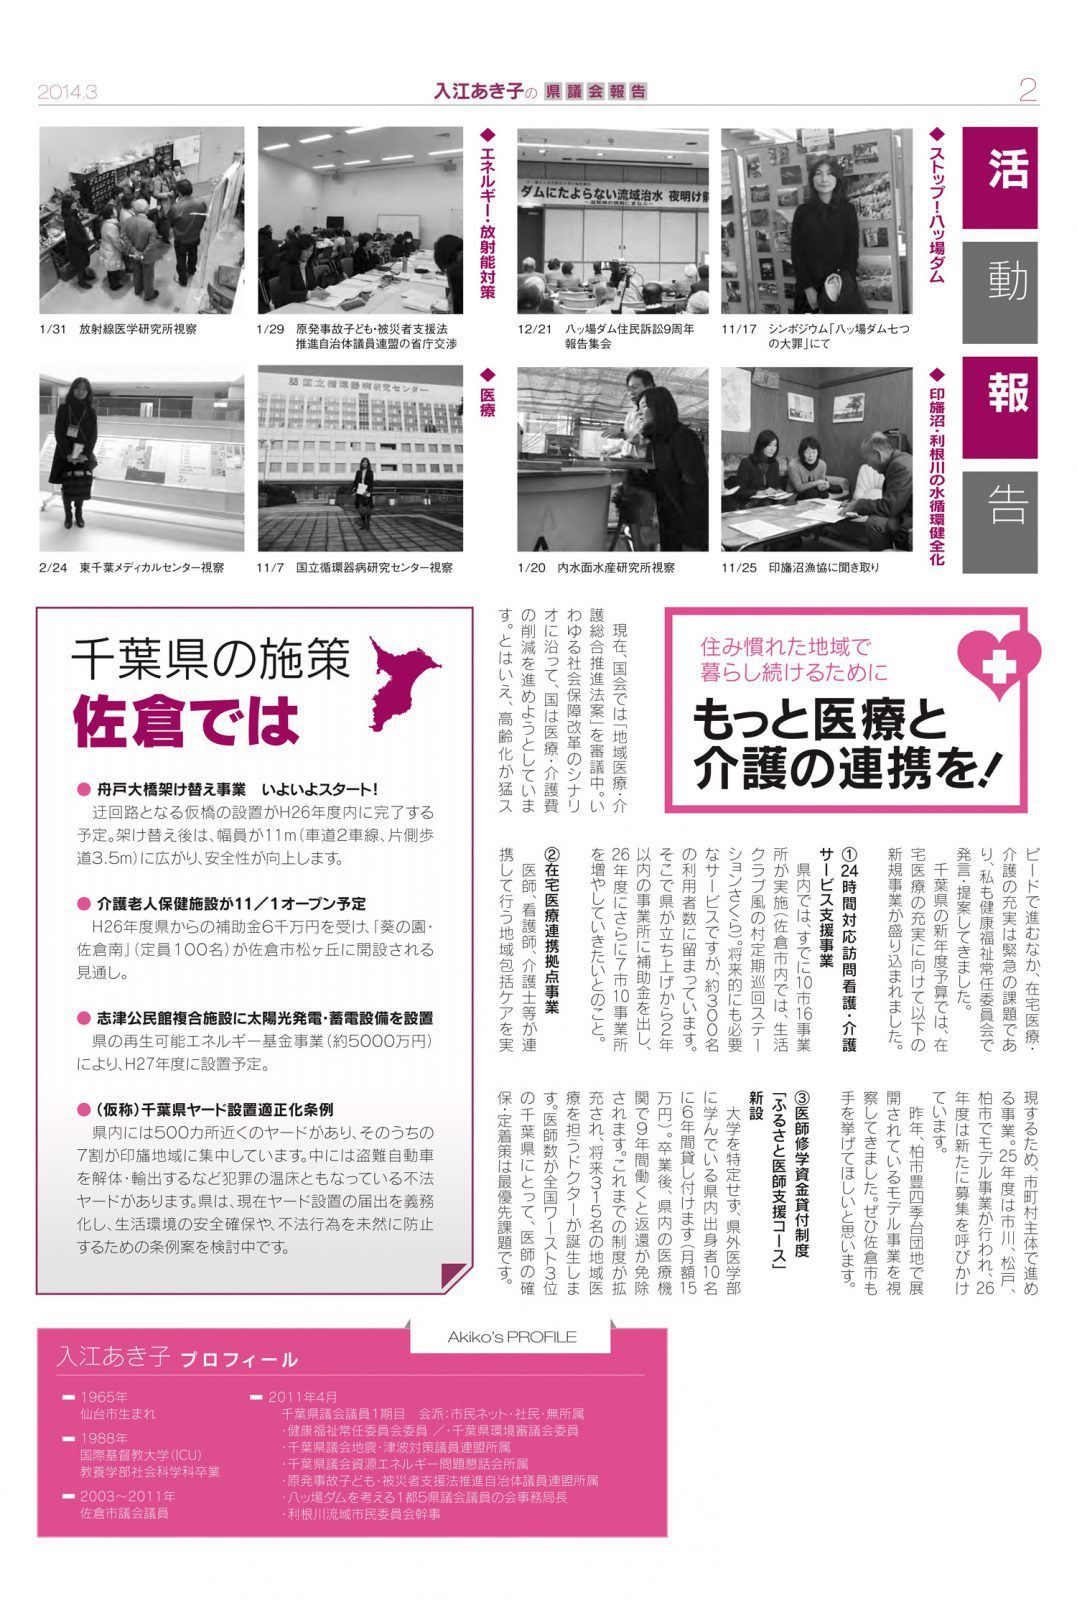 入江あき子の県議会報告 2014年3月発行